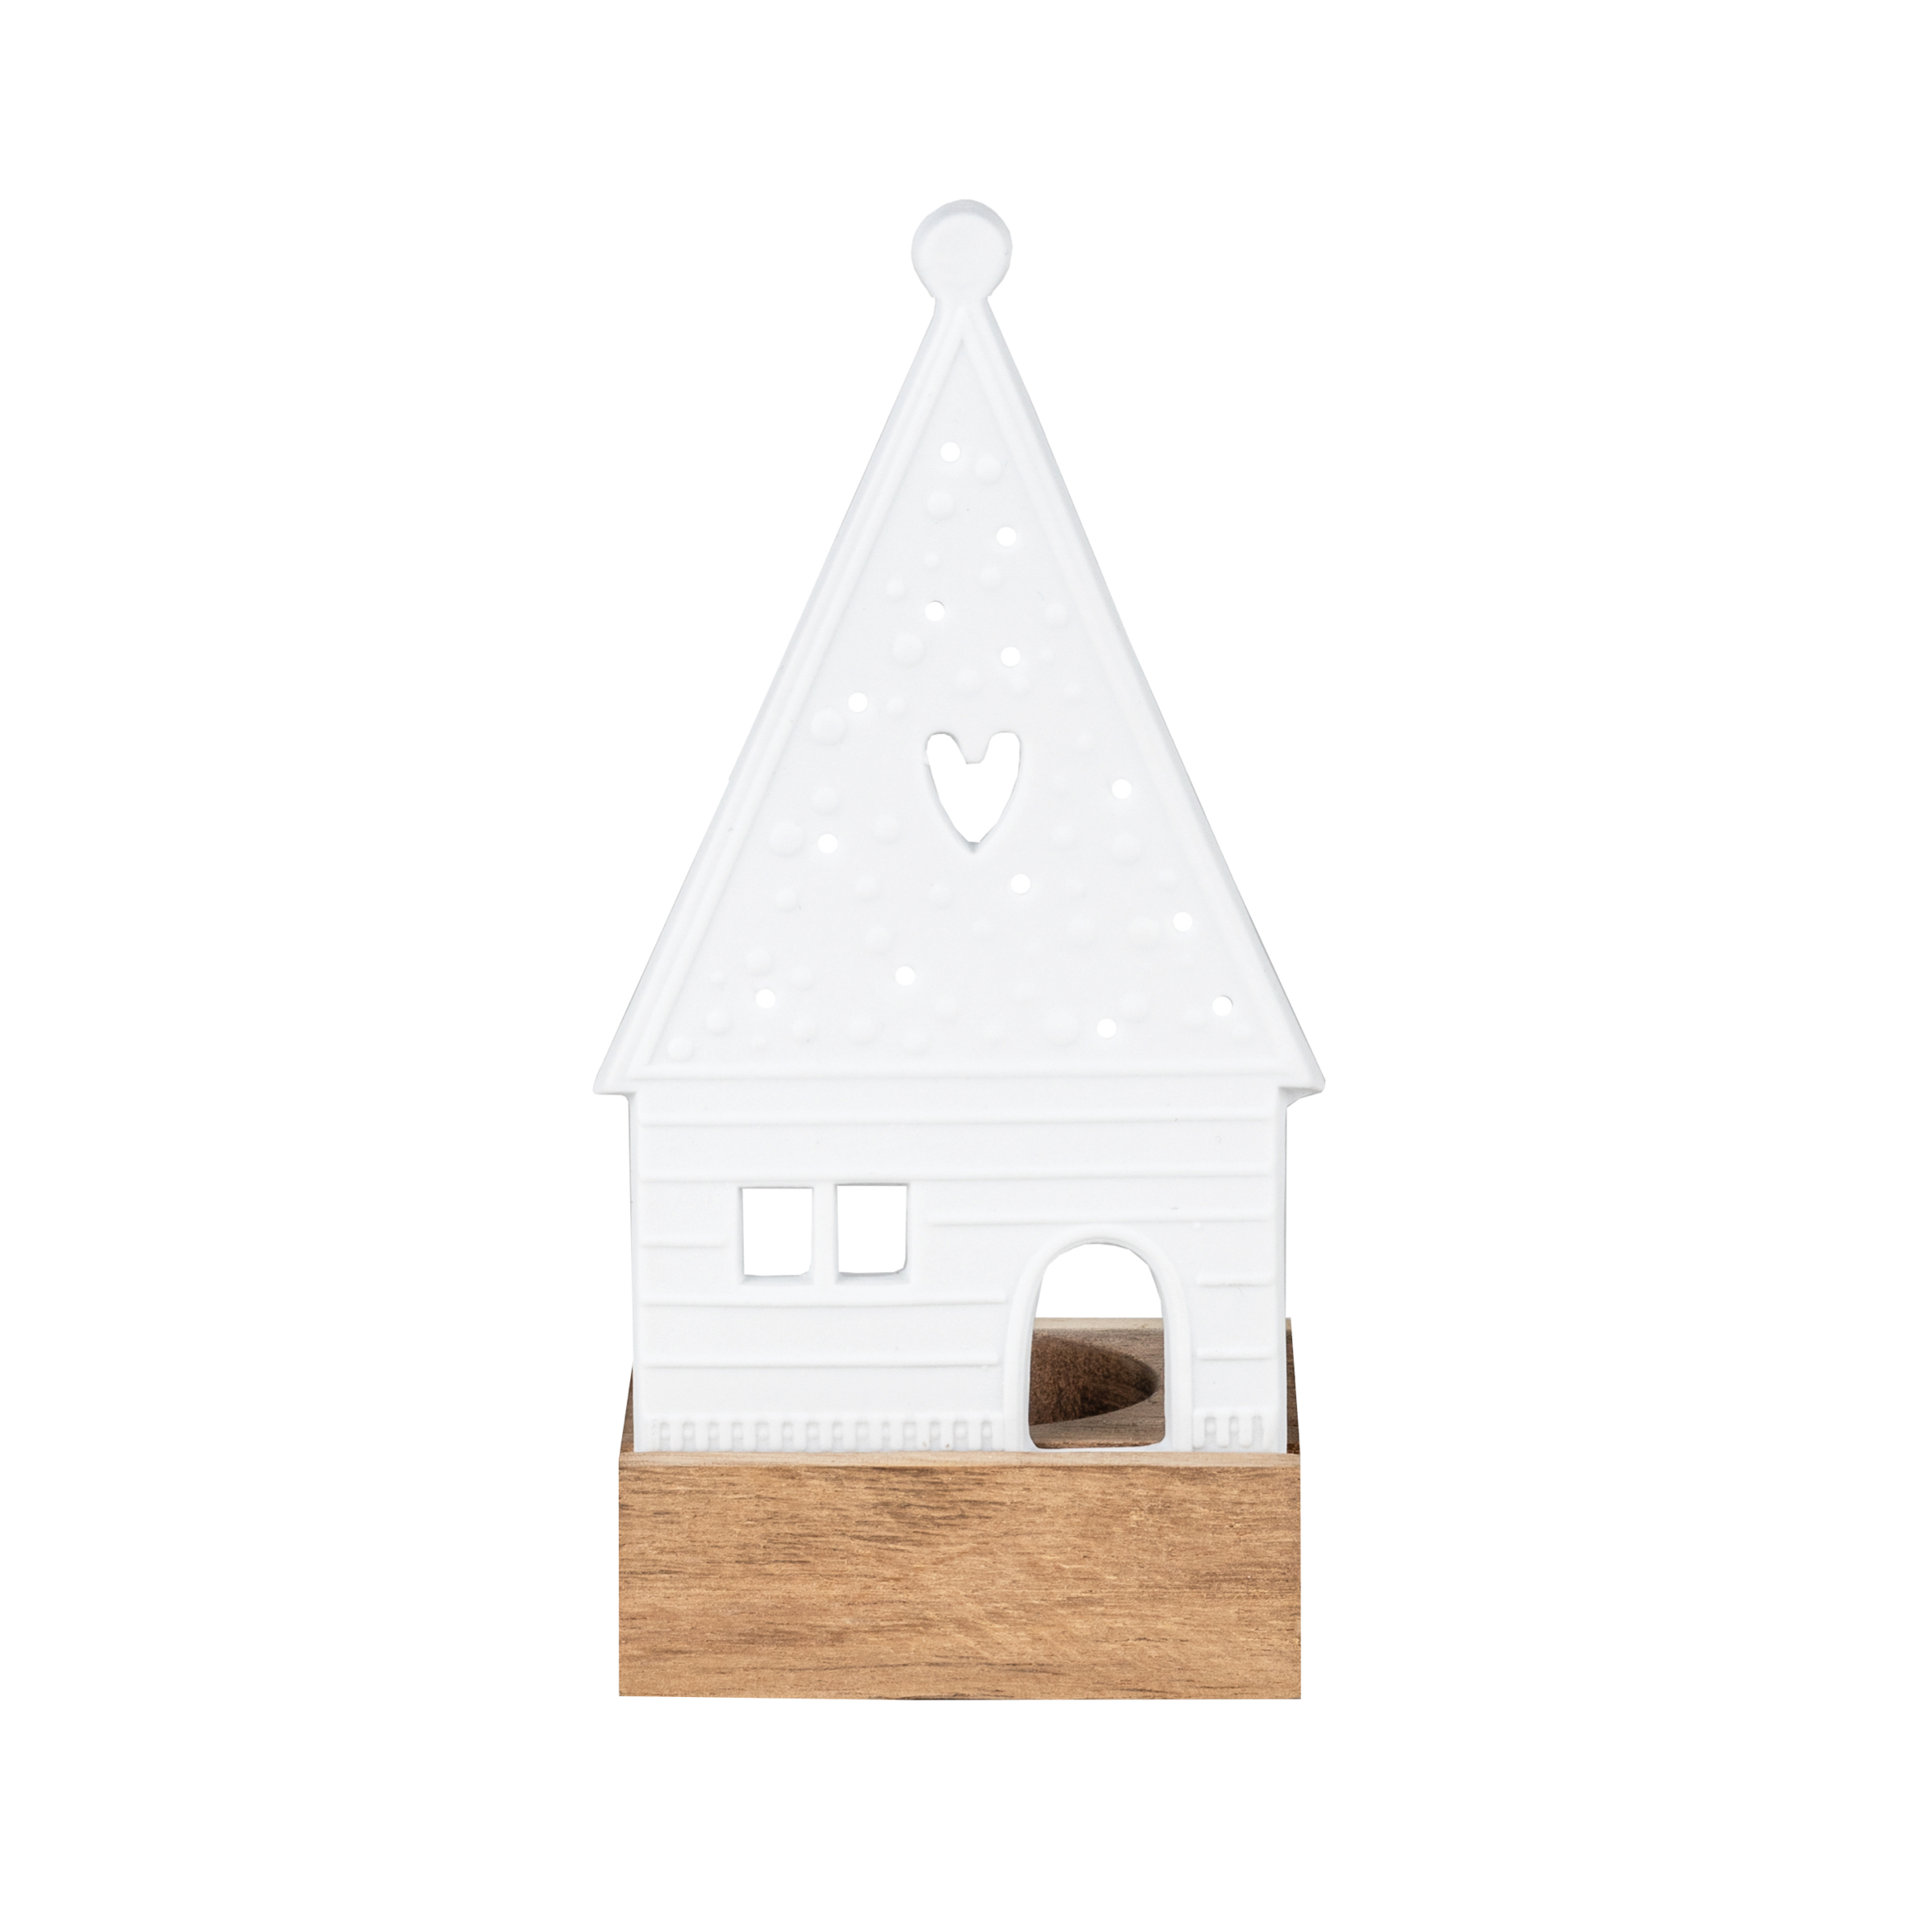 Räder Light Object Mini Porcelain Gingerbread House - Heart 